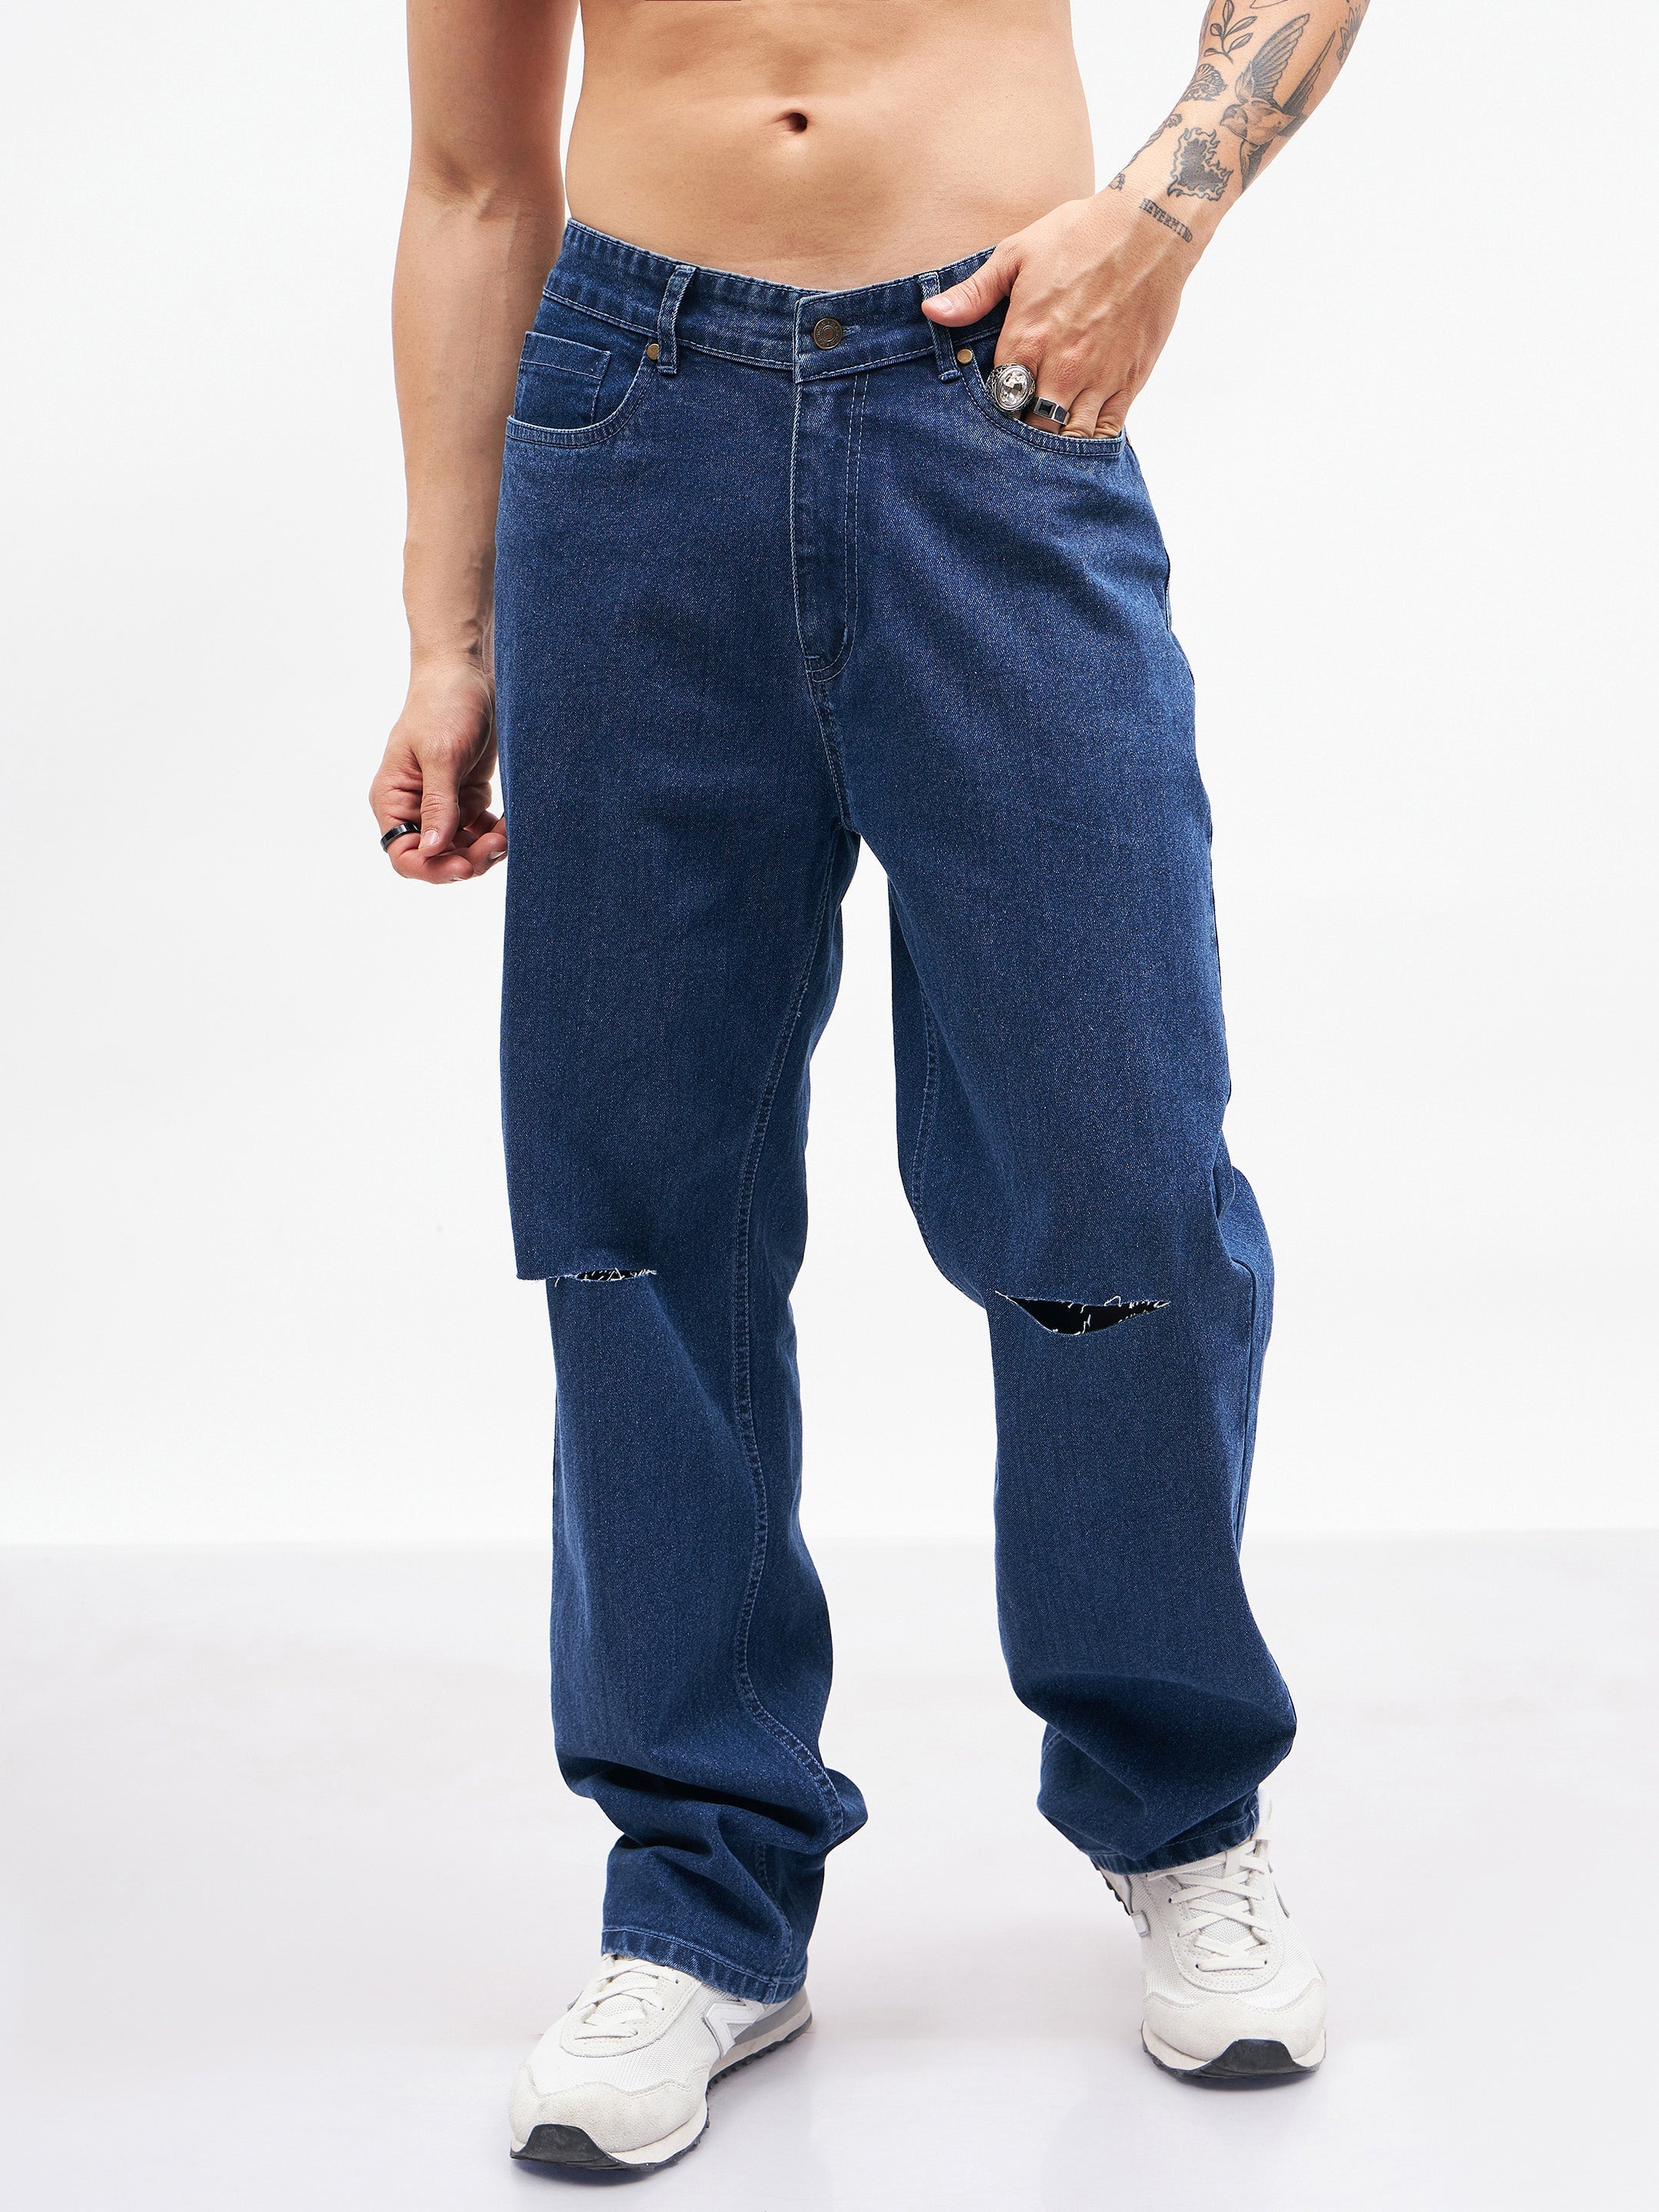 Men's Blue Knee Slit Relax Fit Jeans - MASCLN SASSAFRAS